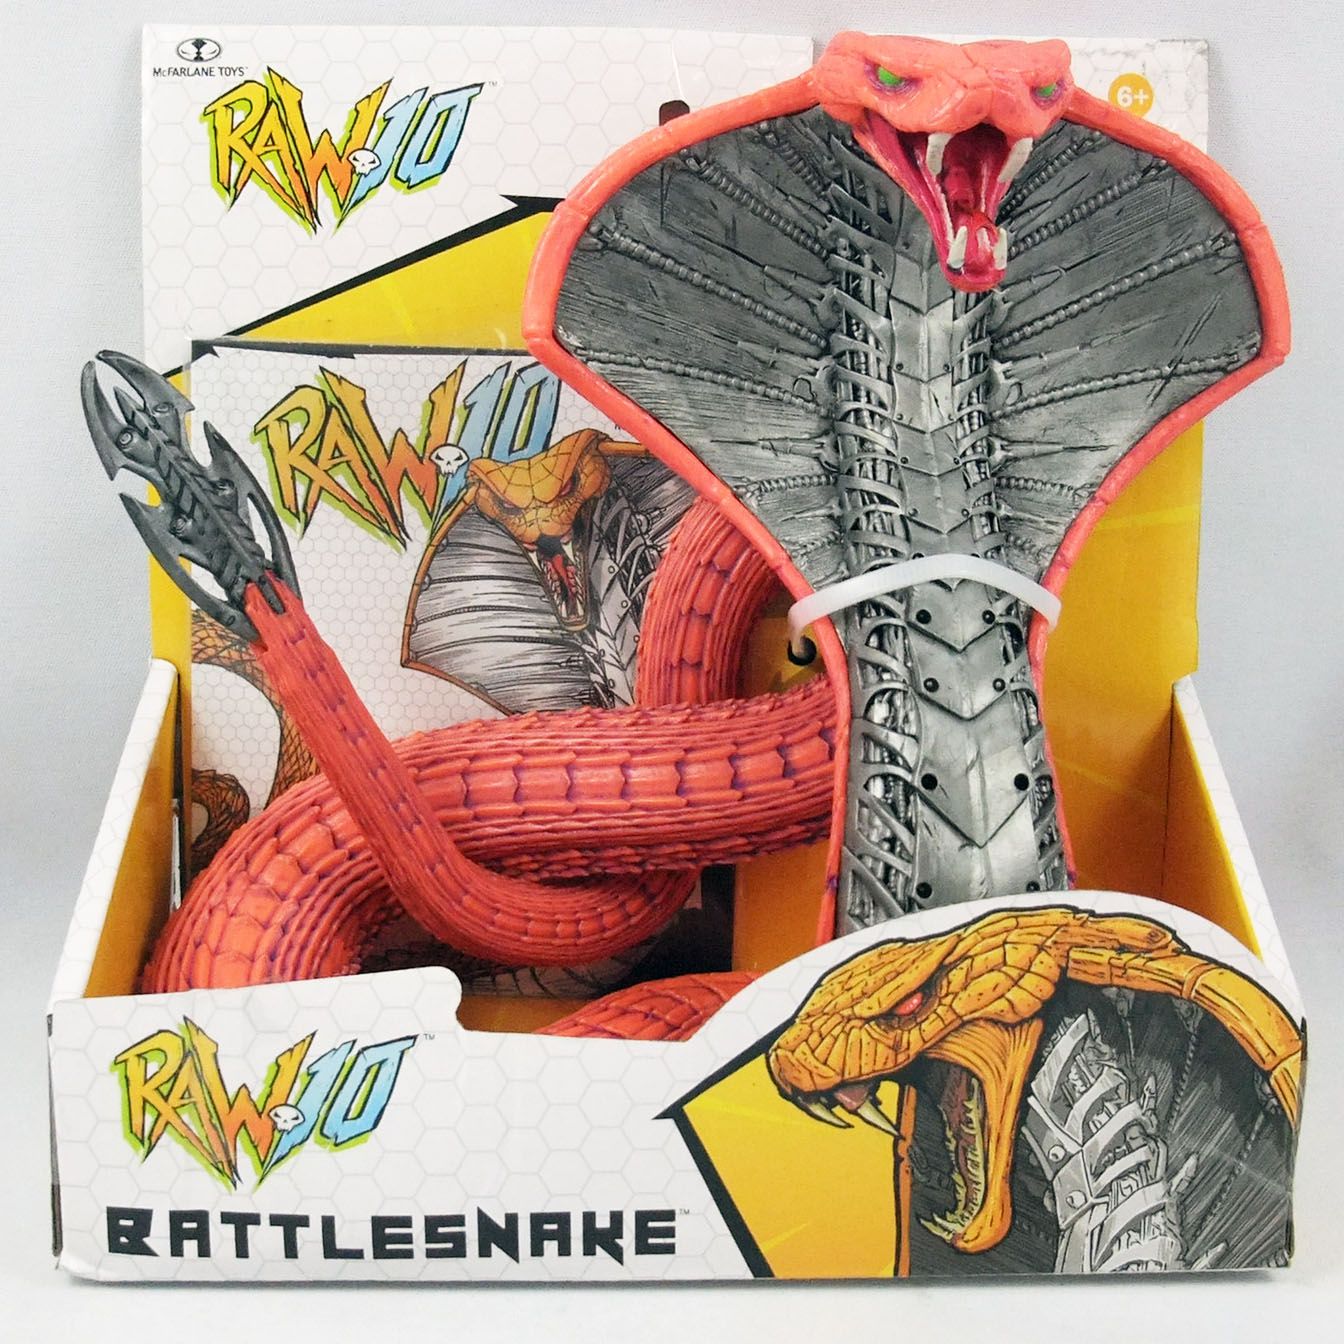 2020 McFarlane Toys Raw 10 Battlesnake Cobra Snake Ship for sale online